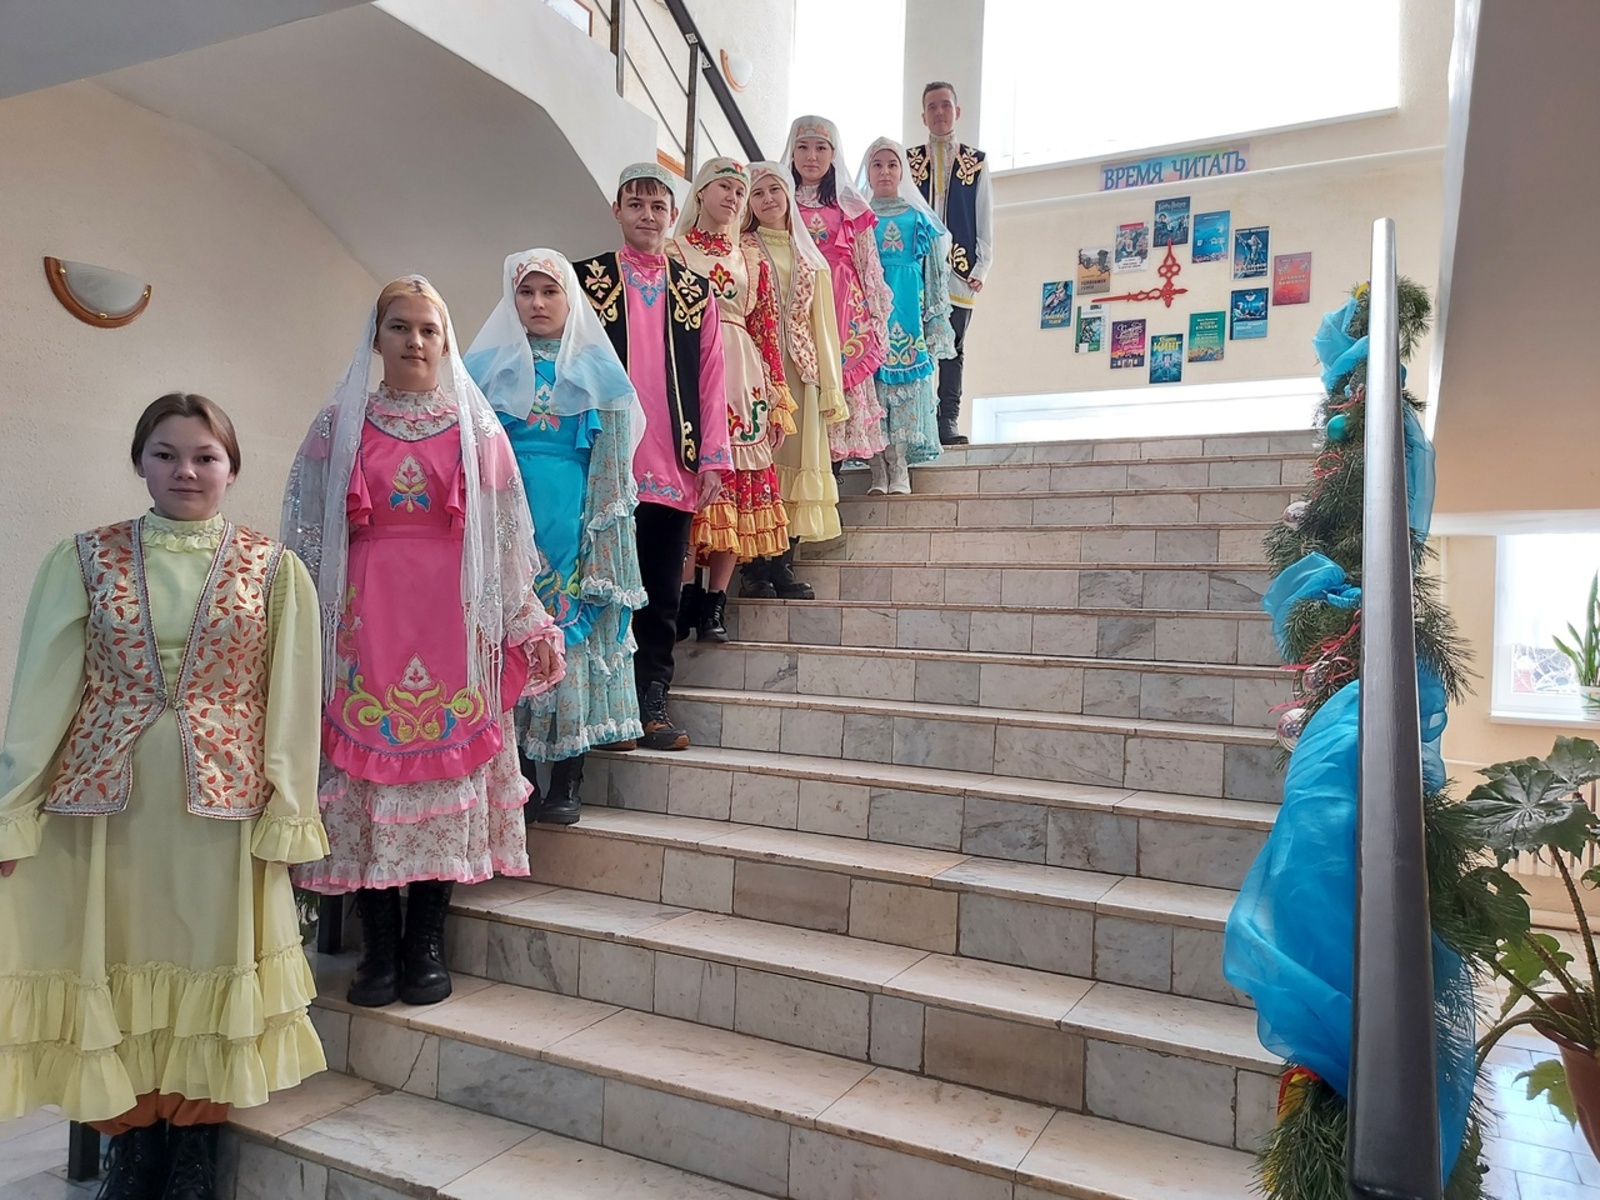 В центральной библиотеке состоялась программа "Красота татарского народного костюма"